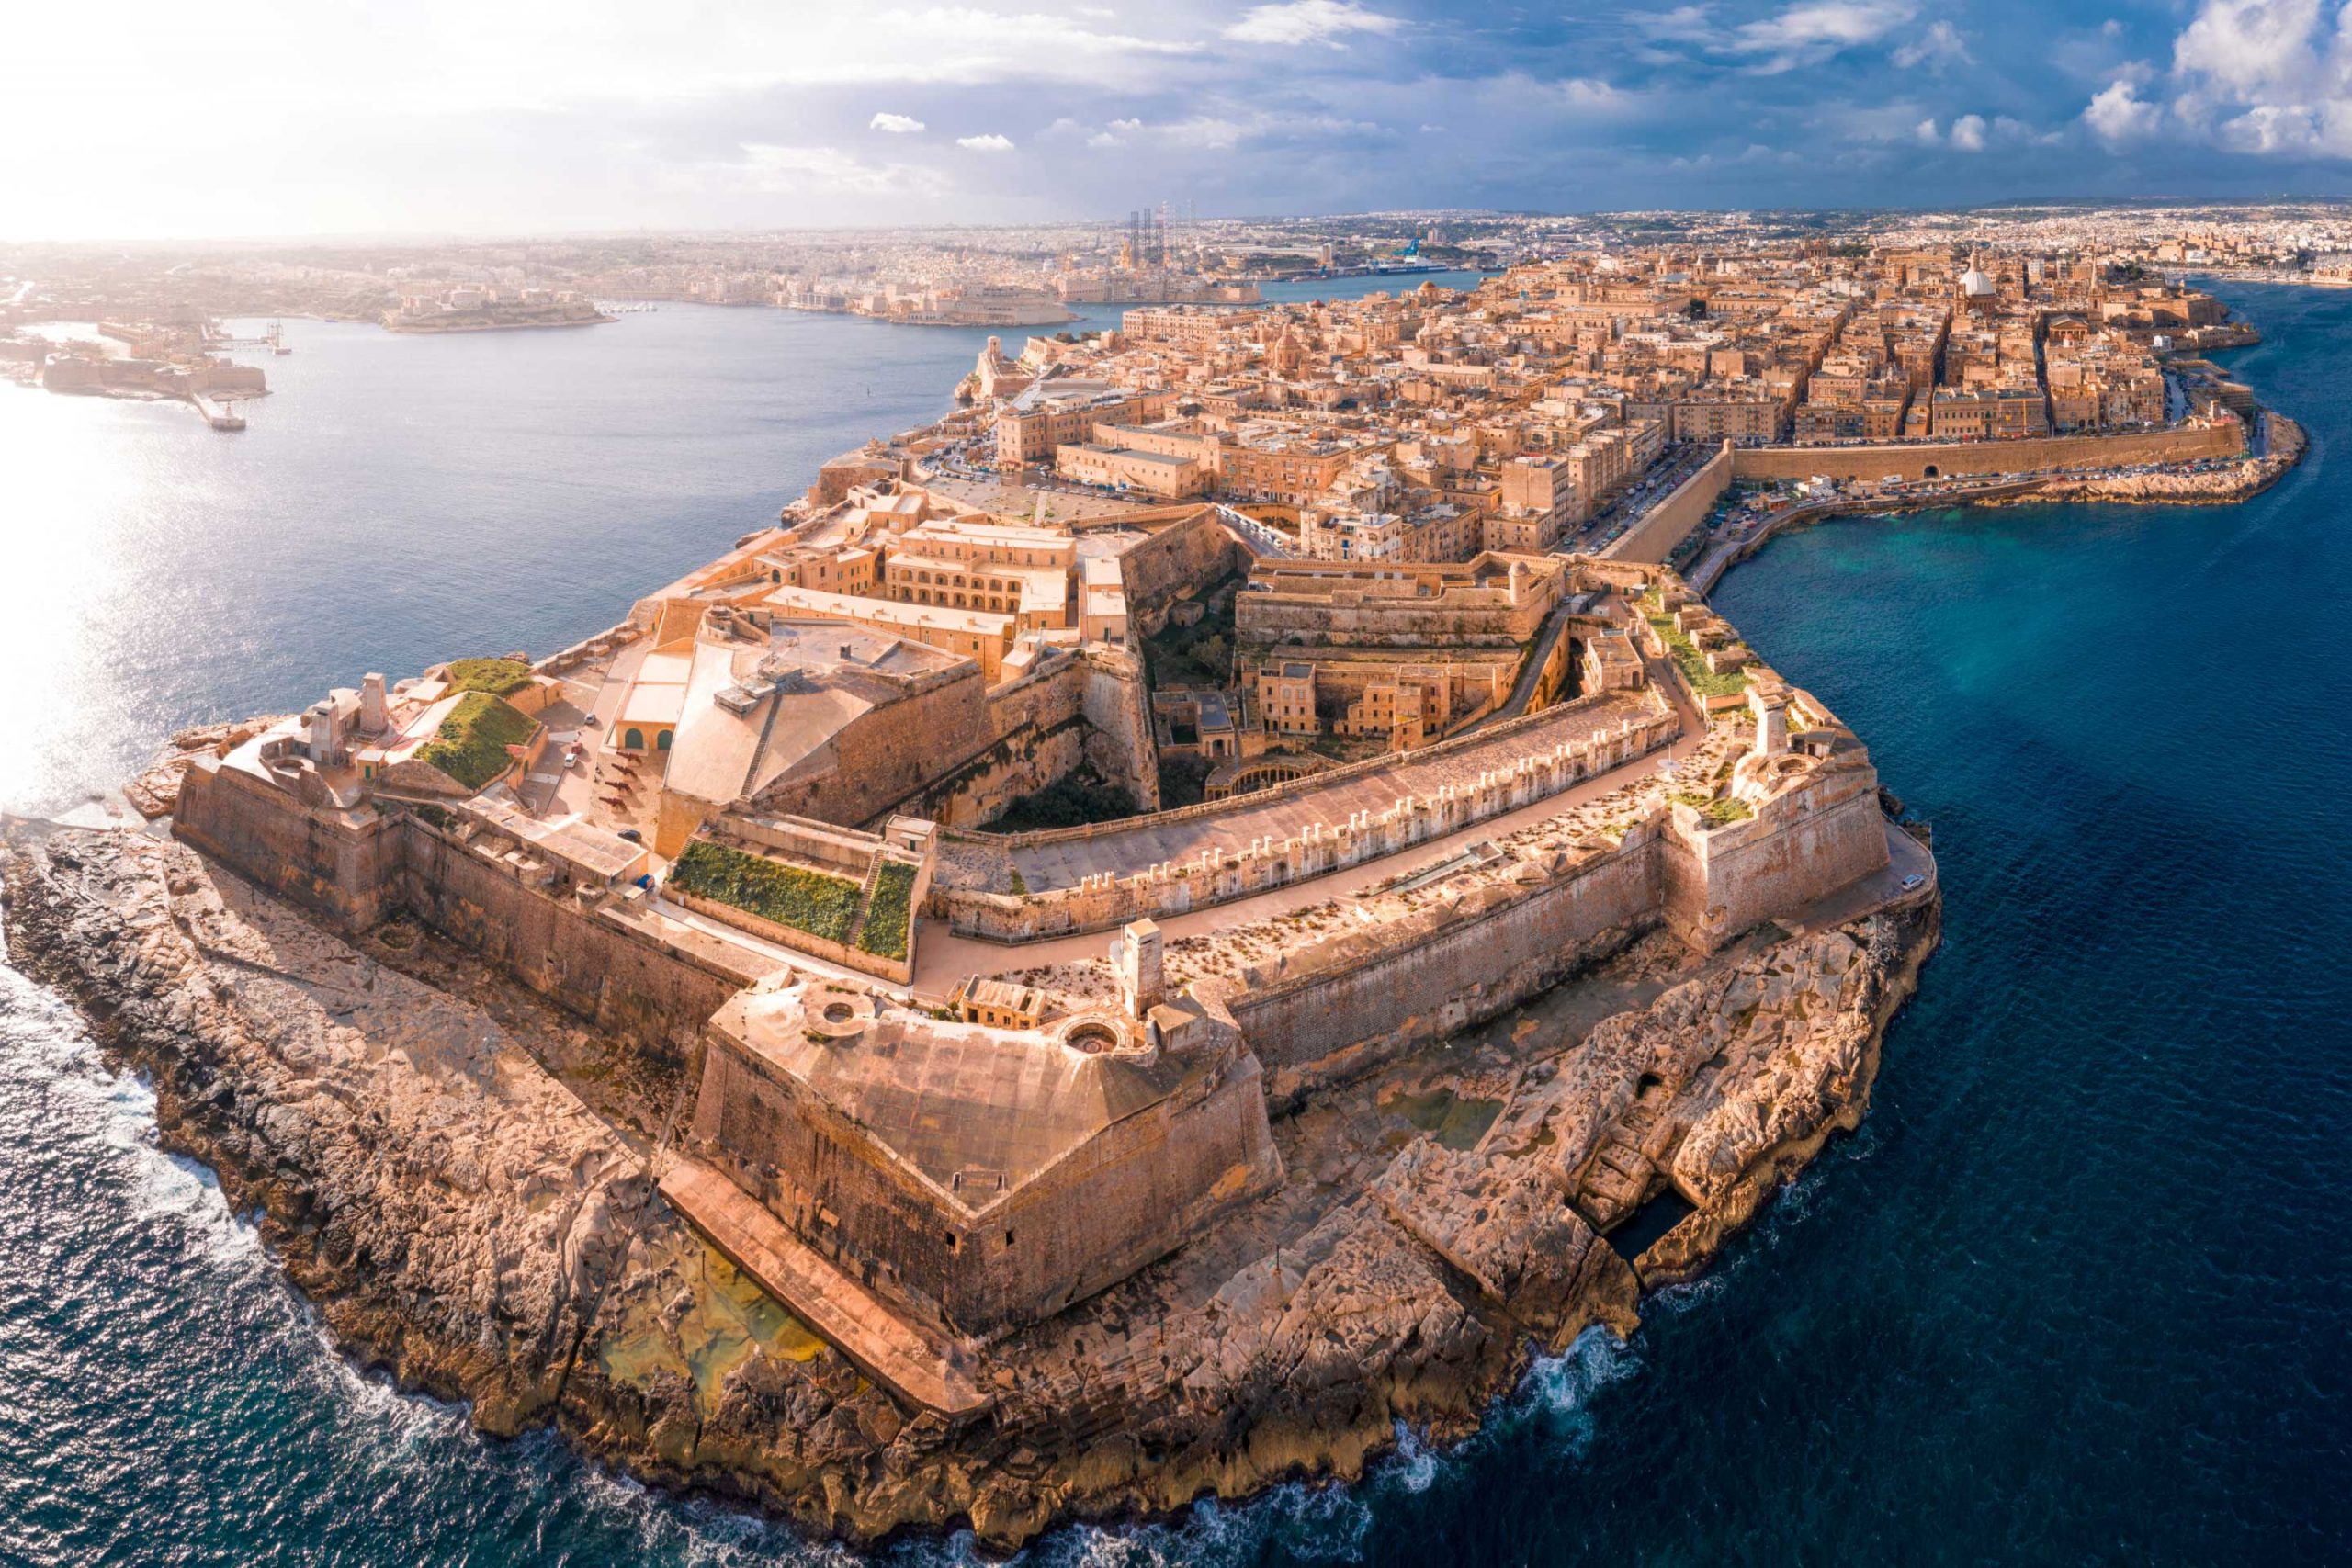 visit malta heritage